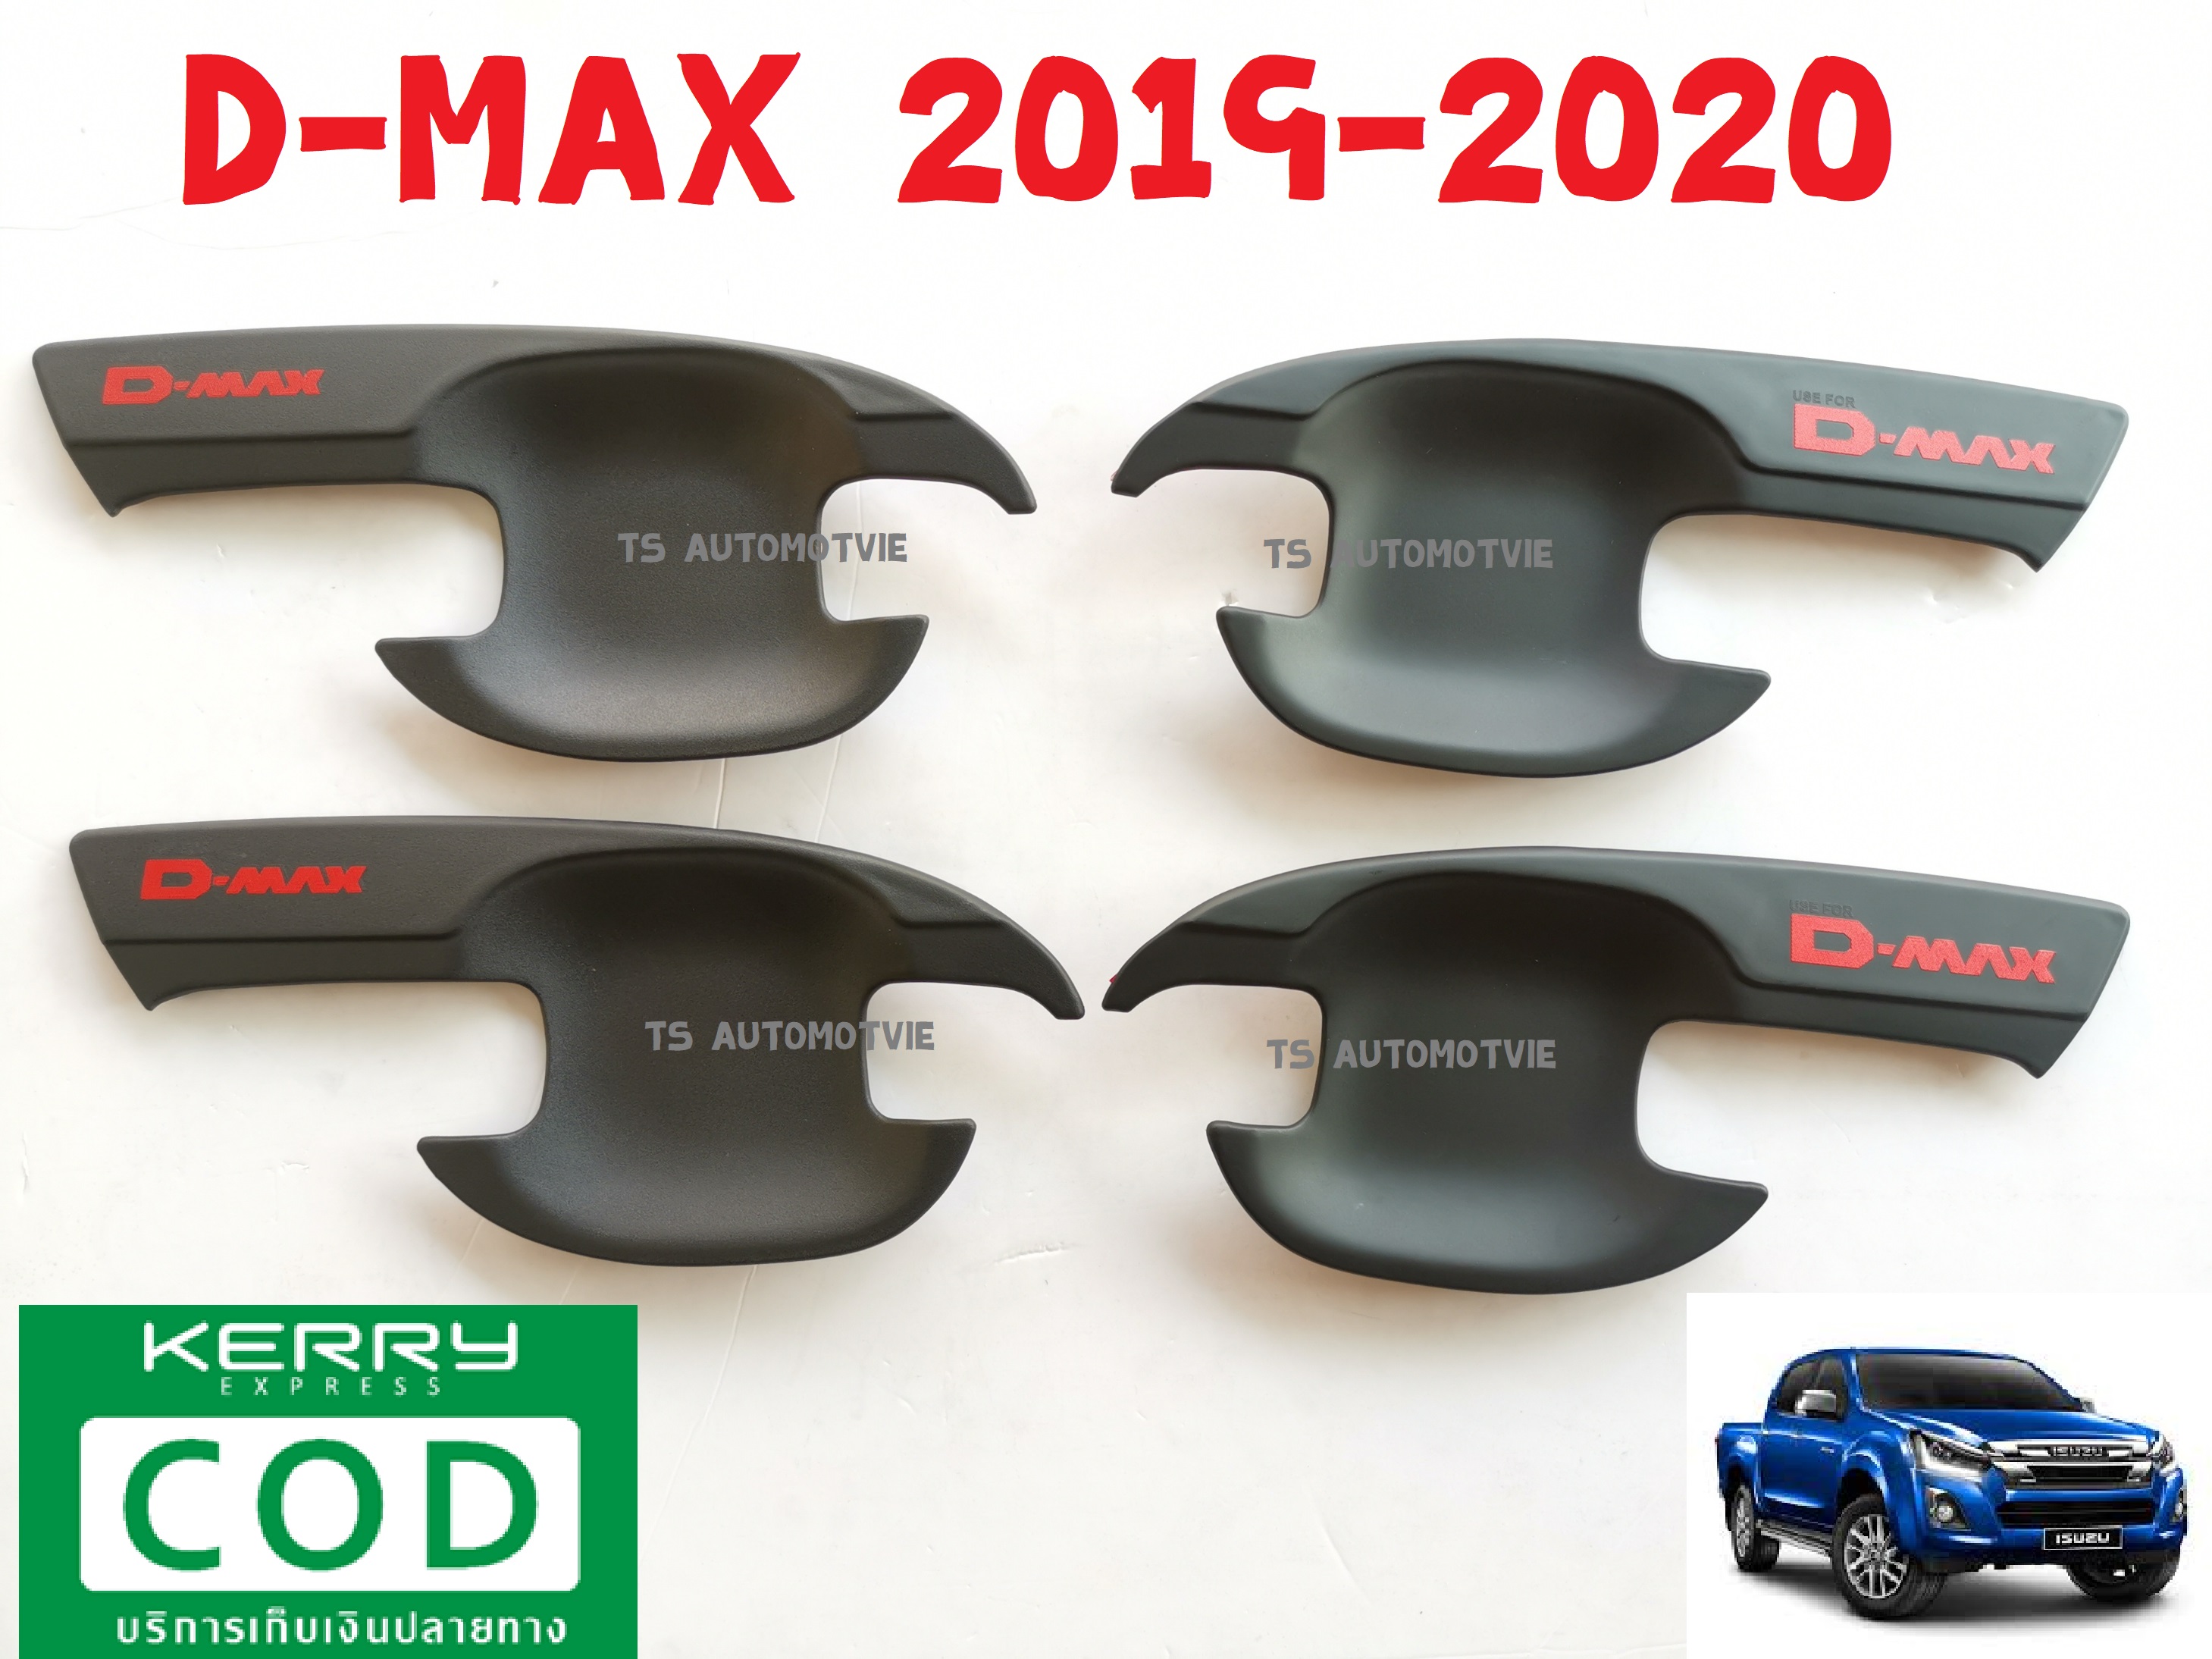 เบ้ารองมือเปิด 4 ประตู ดำด้าน+โลโก้แดง ดีแม็ก ดีแม็กซ์ ISUZU DMAX D-MAX 2019 2020